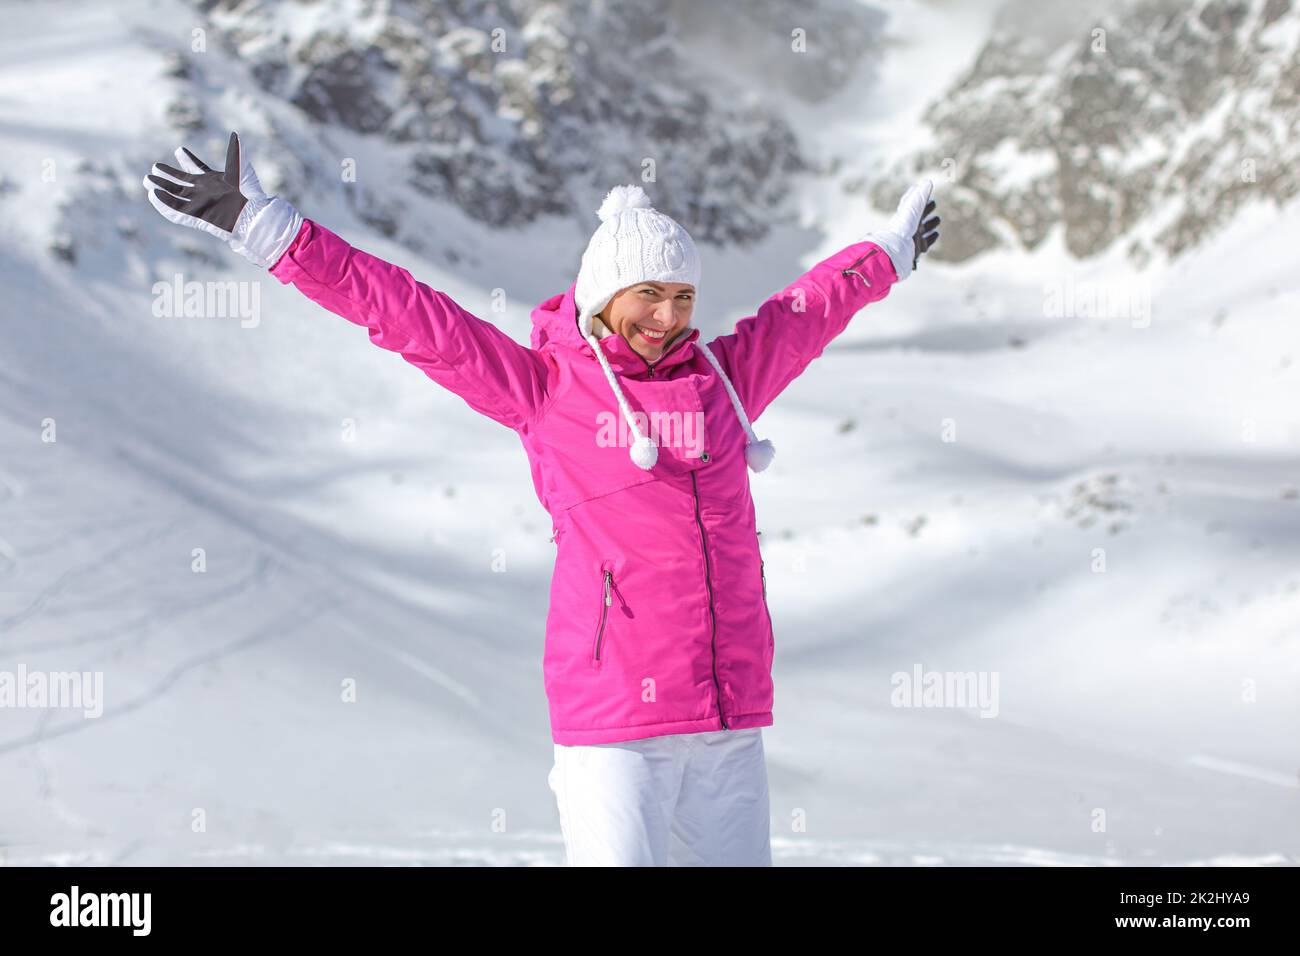 Junge Frau in rosa Winter Ski Jacke, Mütze und Handschuhe, die Arme ausgebreitet, lächelnd, glücklich mit Schnee bedeckten Berg hinter ihr. Stockfoto